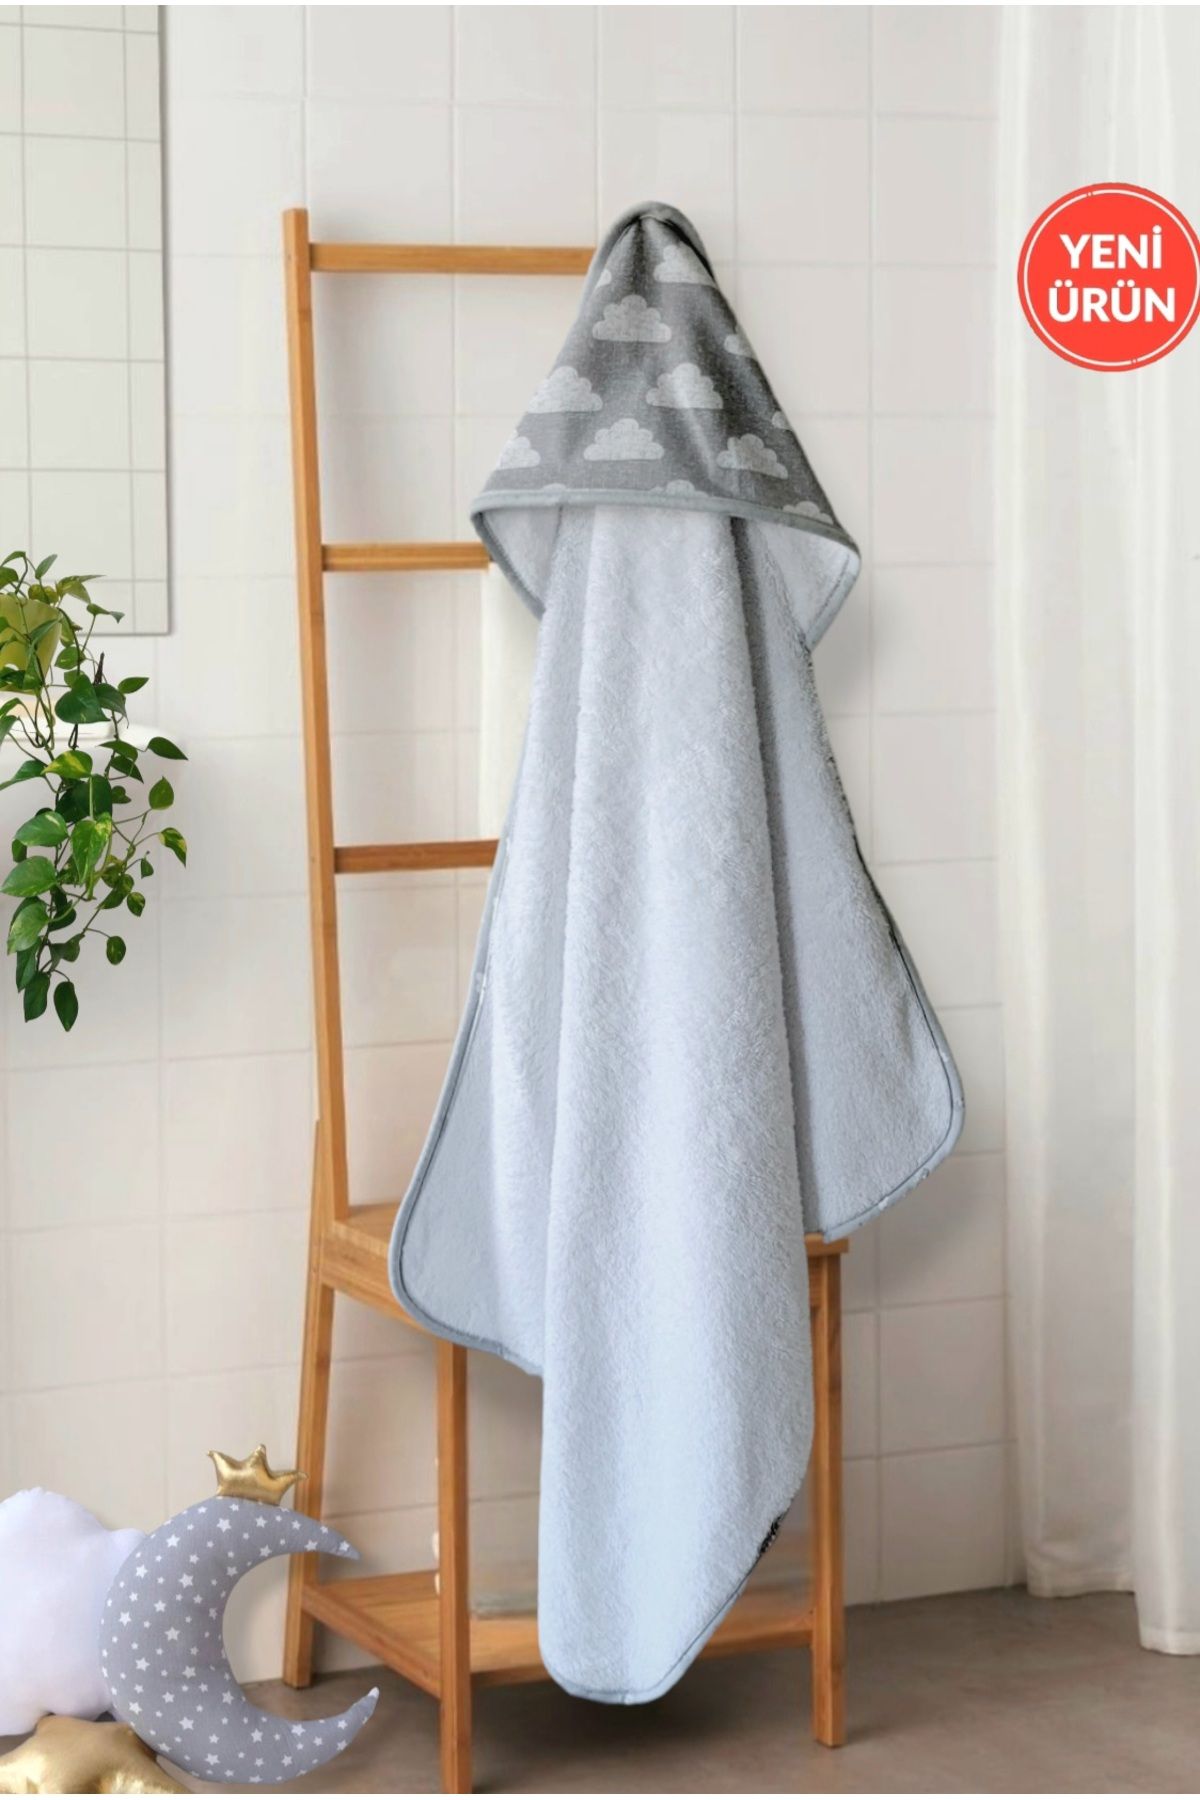 Alpar Tekstil pamuklu yumuşacık kız-erkek Bebek Banyo Havlu Kundak GRİ/BULUT